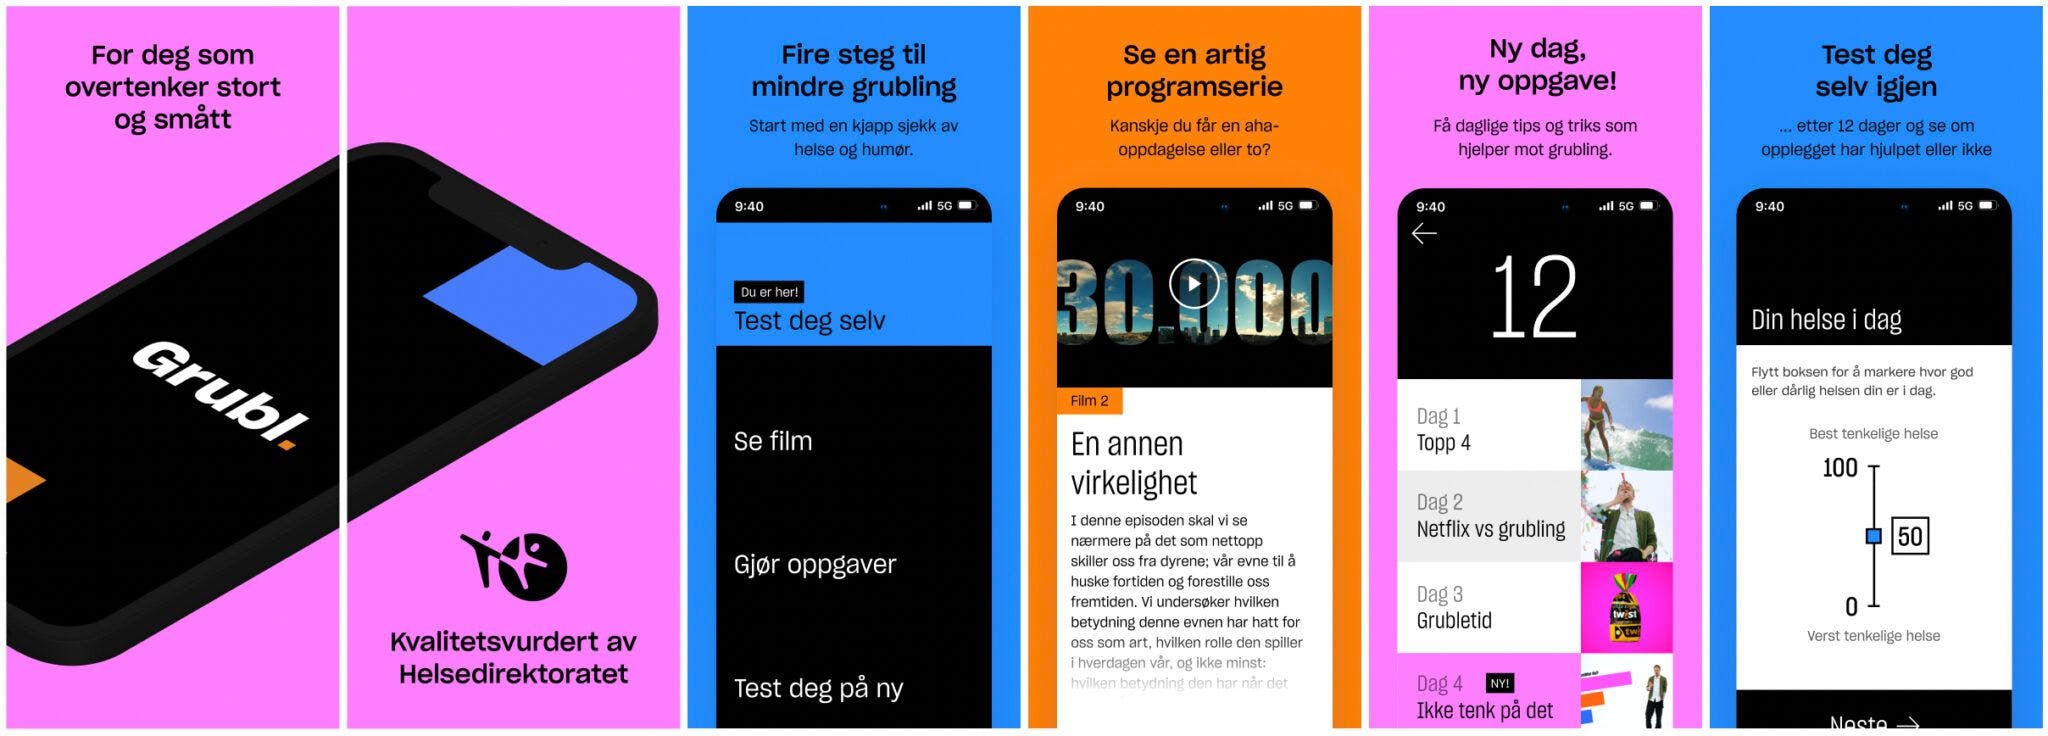 Reklamedisplay for gratisappen Grubl. Bildet viser en rekke mobilskjermer som alle viser ulike deler av appen.